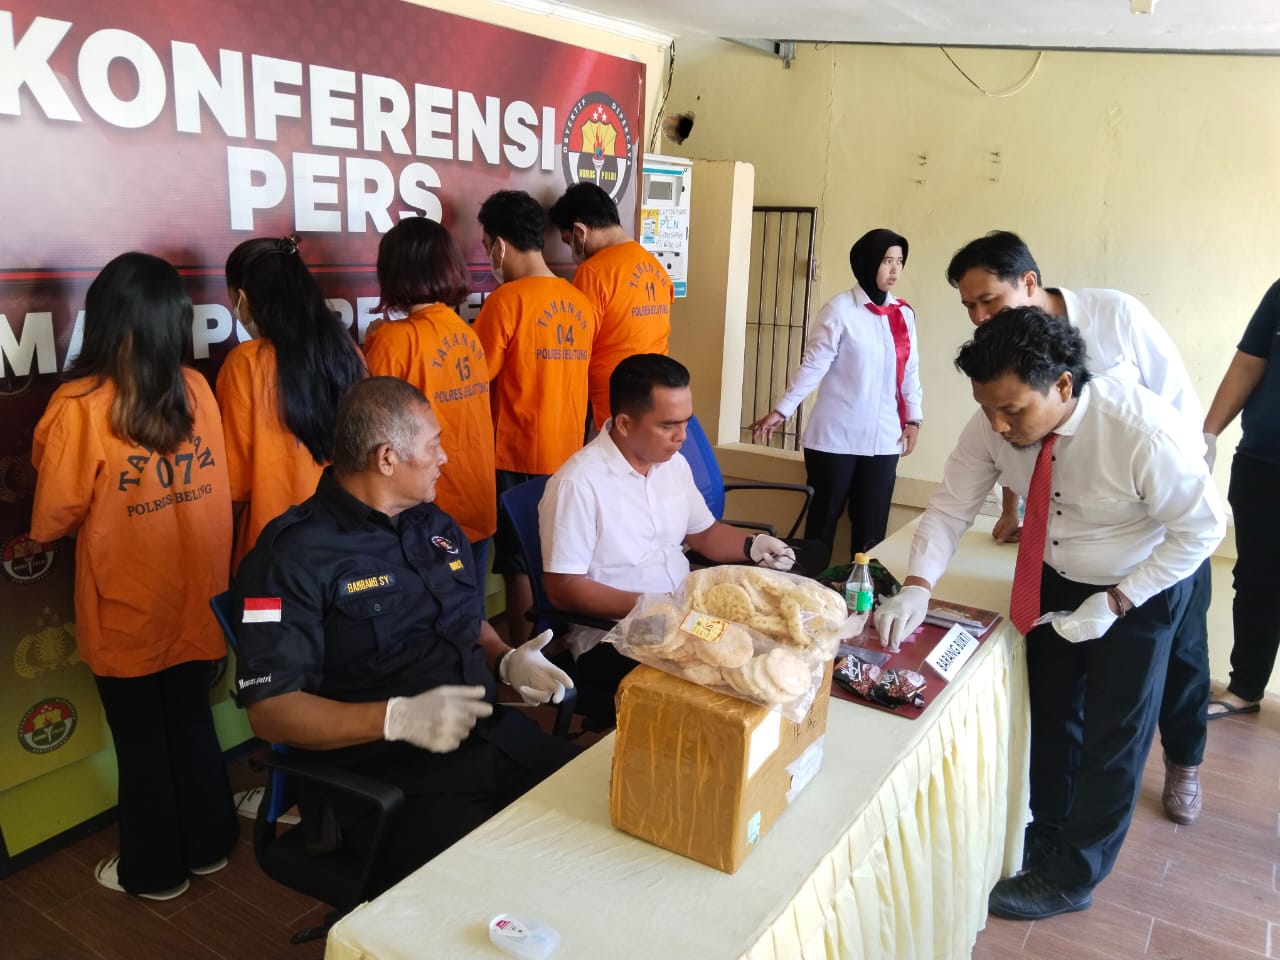 Samarkan Narkoba dari Bangka ke Belitung, Dicampur Kerupuk dan Kopi Bungkus